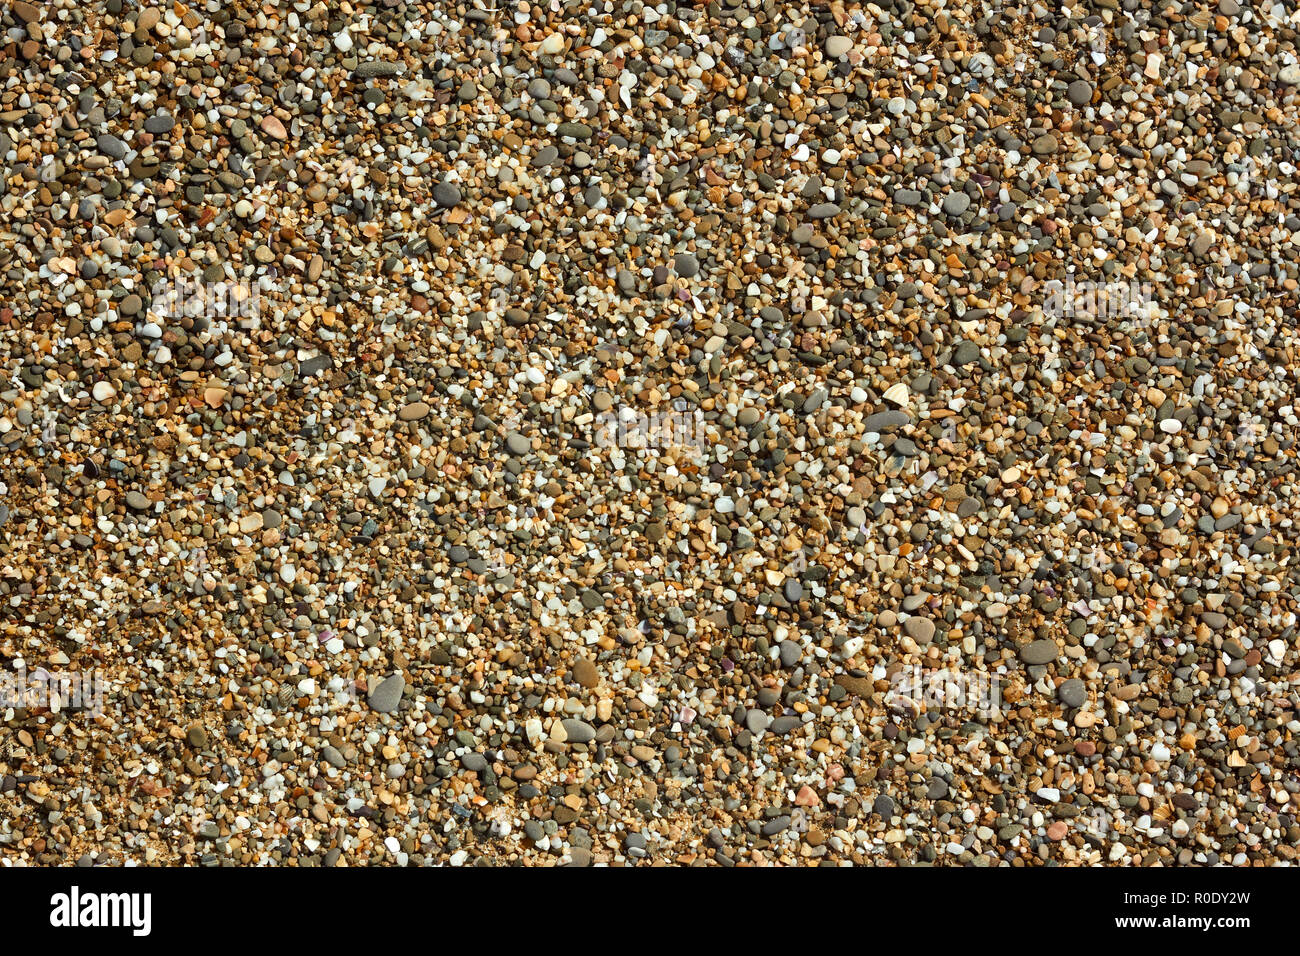 Fragment de galets de plage avec de petits cailloux de couleur, de pierres et de coquillages détail close-up en plein soleil Banque D'Images